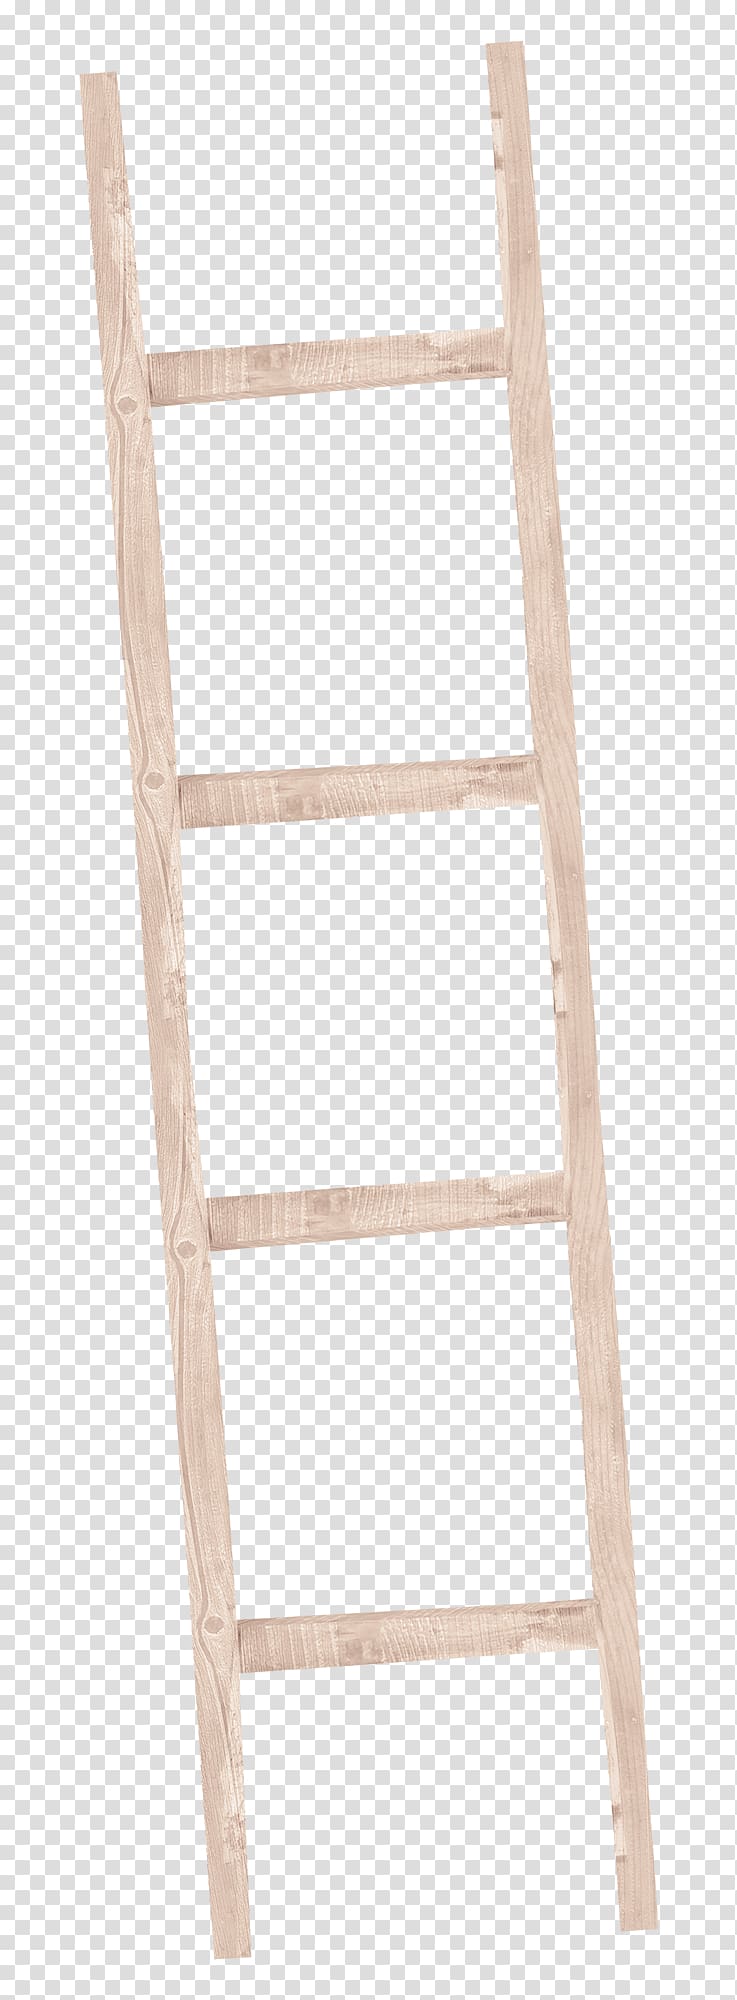 Wood Ladder, ladder transparent background PNG clipart